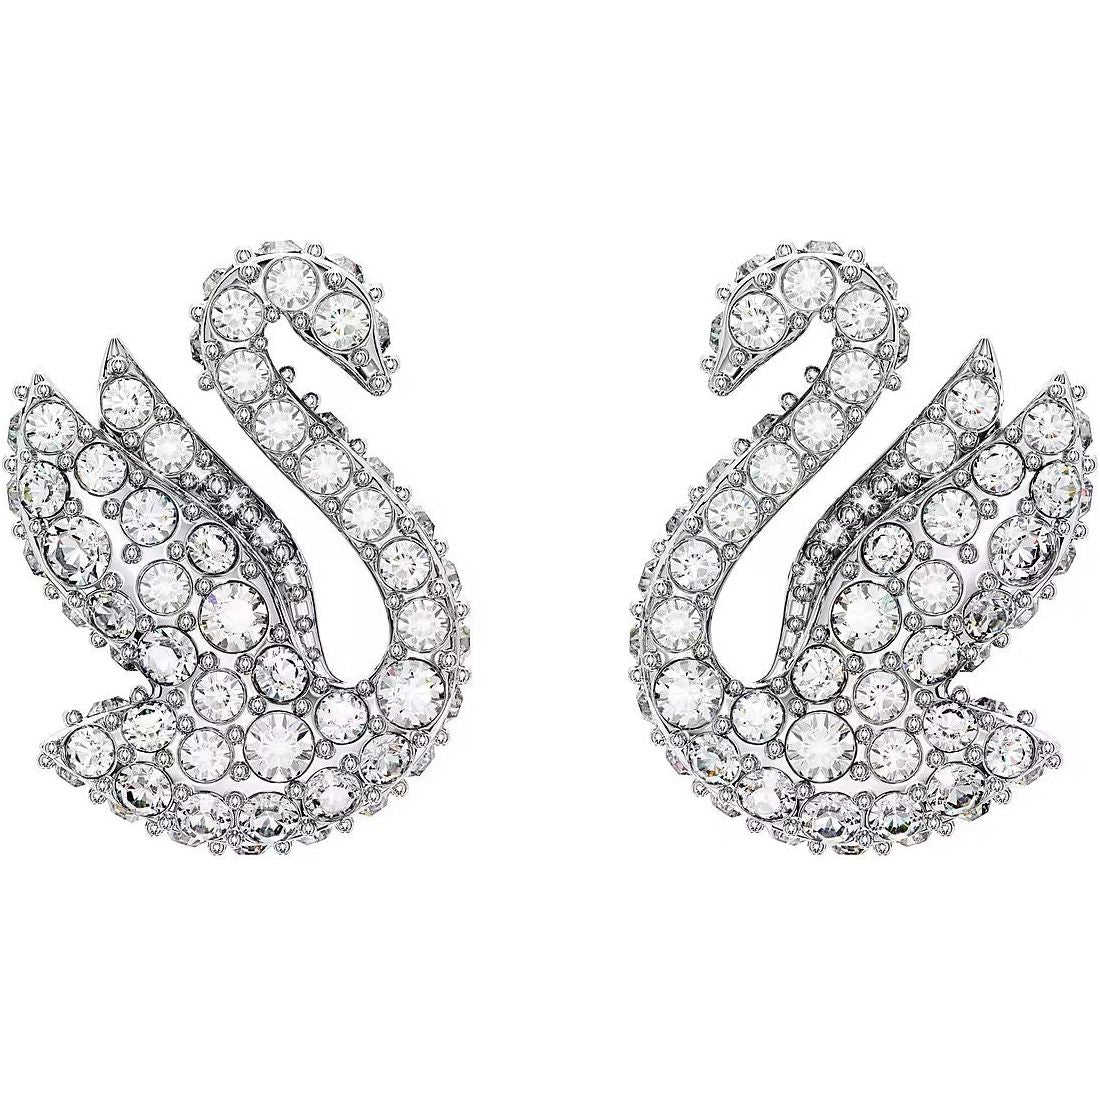 SWAROVSKI JEWELS SWAROVSKI JEWELS JEWELRY Mod. 5647873 DESIGNER FASHION JEWELLERY swarovski-jewels-jewelry-mod-5647873